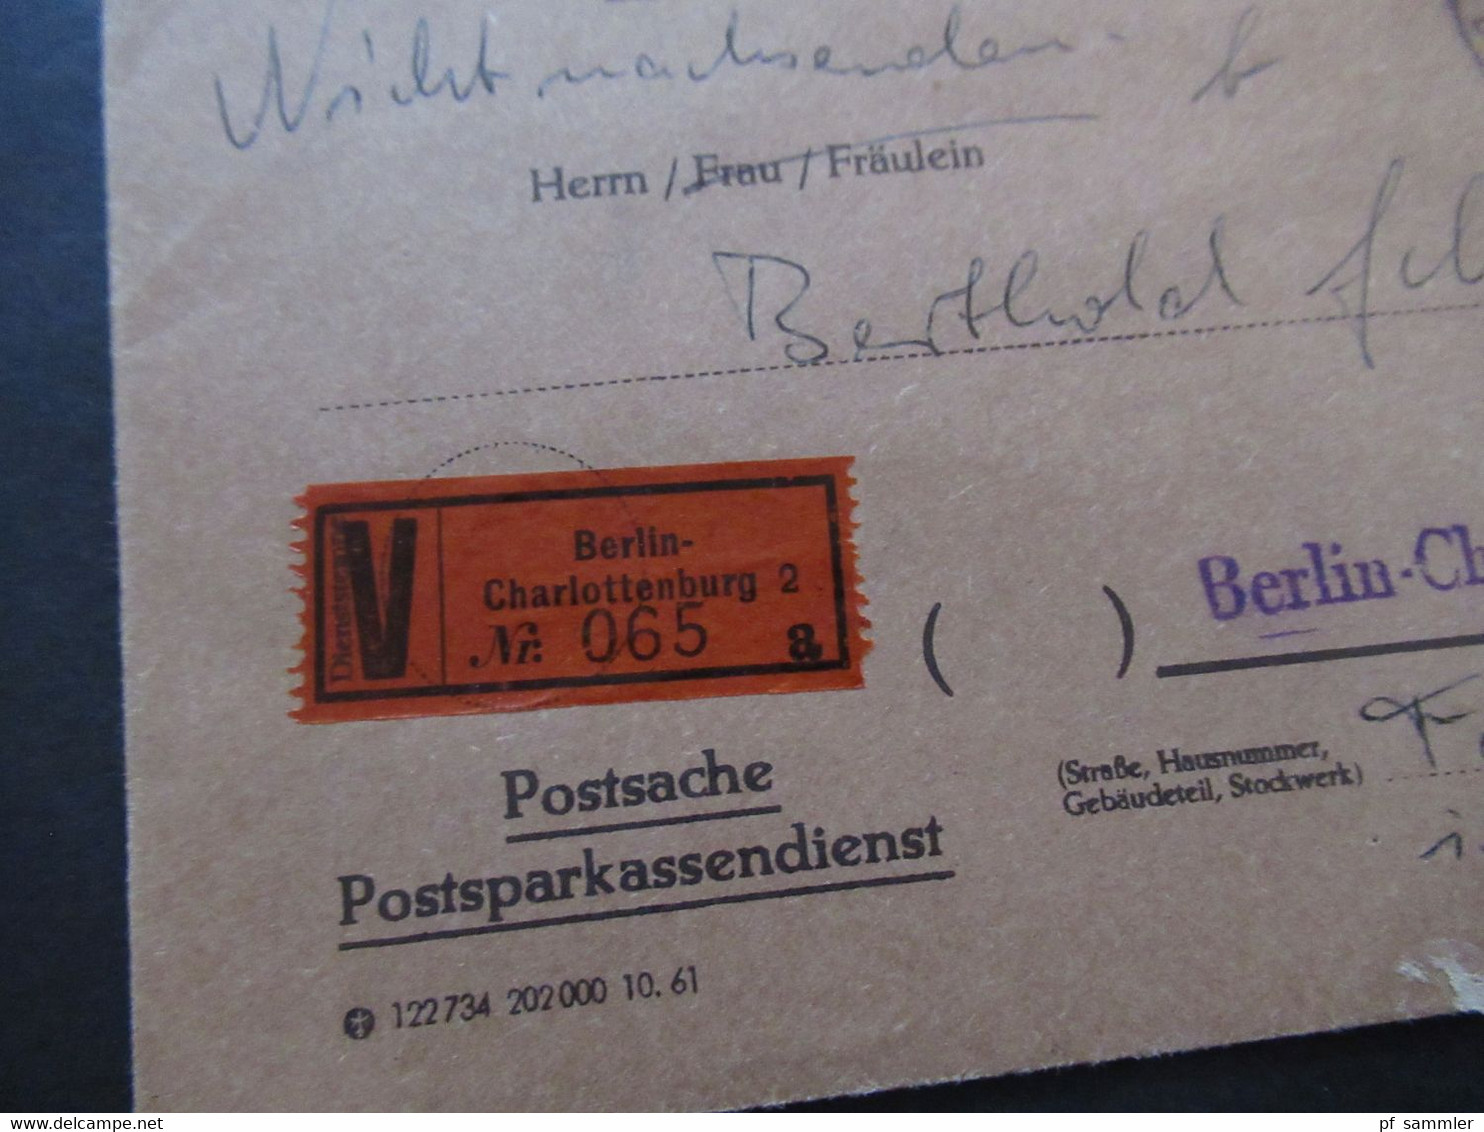 Berlin (West) 1962 Wertbrief V-Zettel Berlin Charlottenburg 2 Postsache Postsparkasendienst Postsparbuch Wert 500 DM - Cartas & Documentos